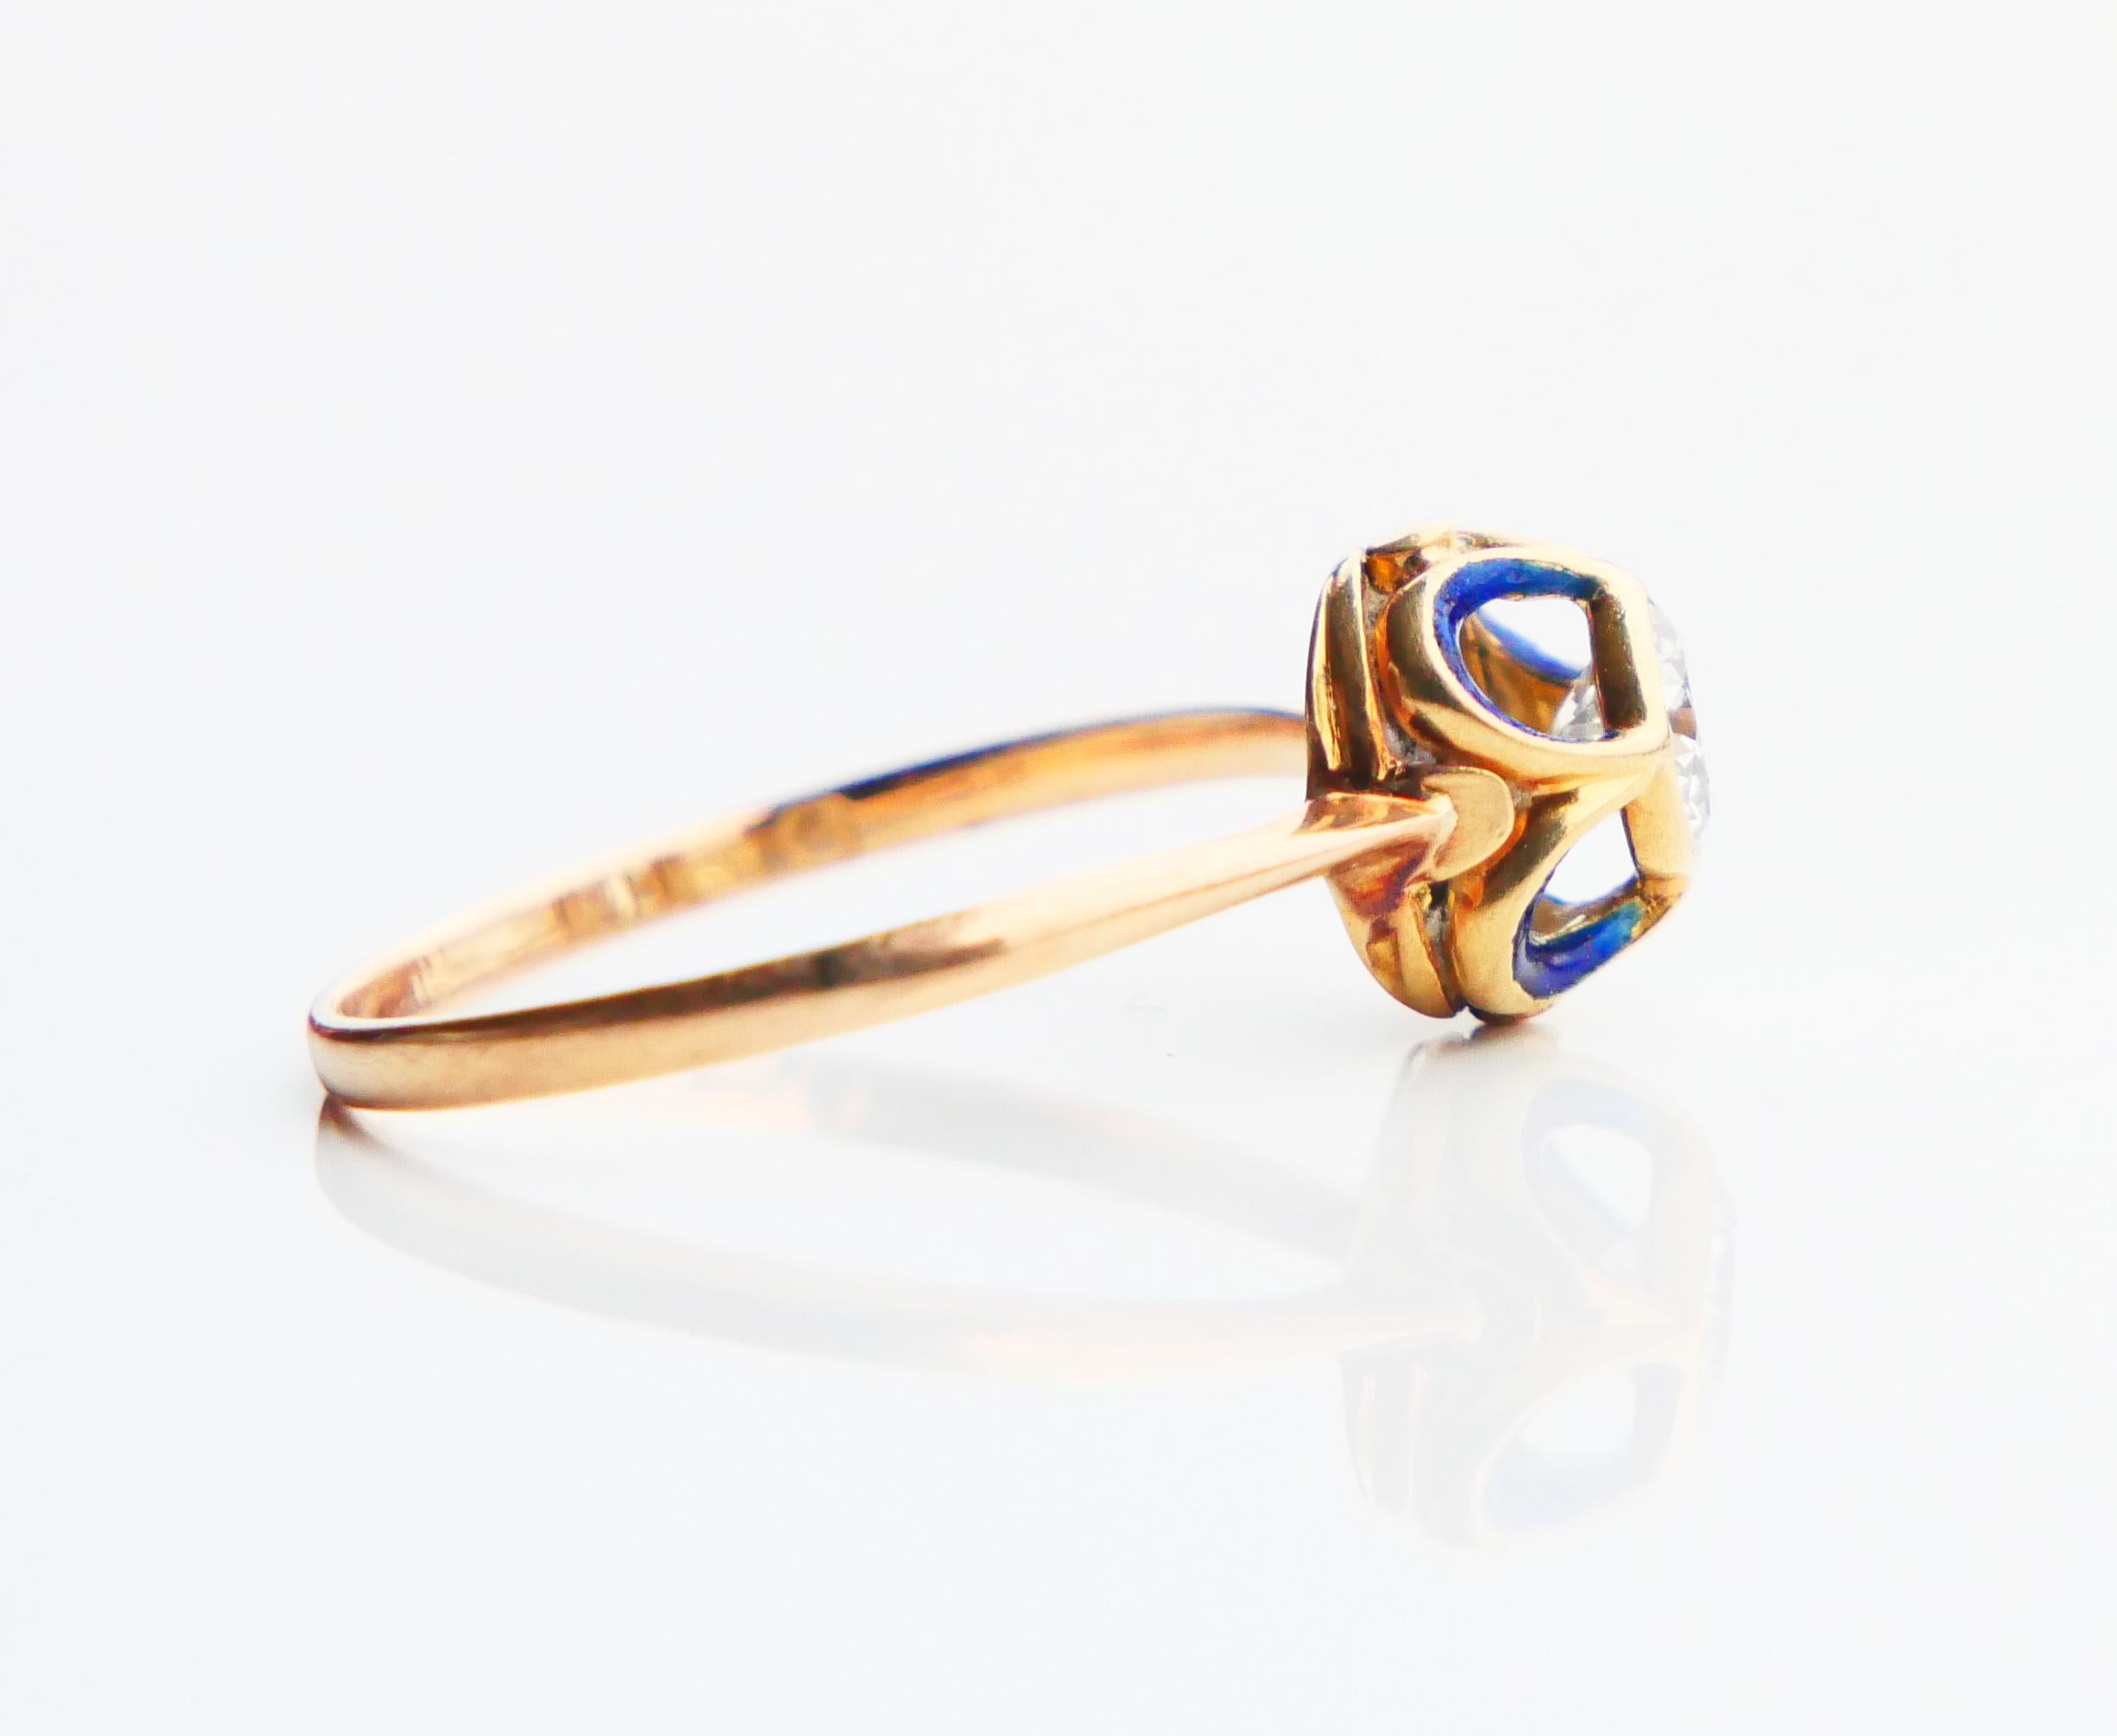 1904 Nordic Art Nouveau Ring 05ct. Diamond Blue Enamel 18K Gold ØUS9.5/2.5gr For Sale 7